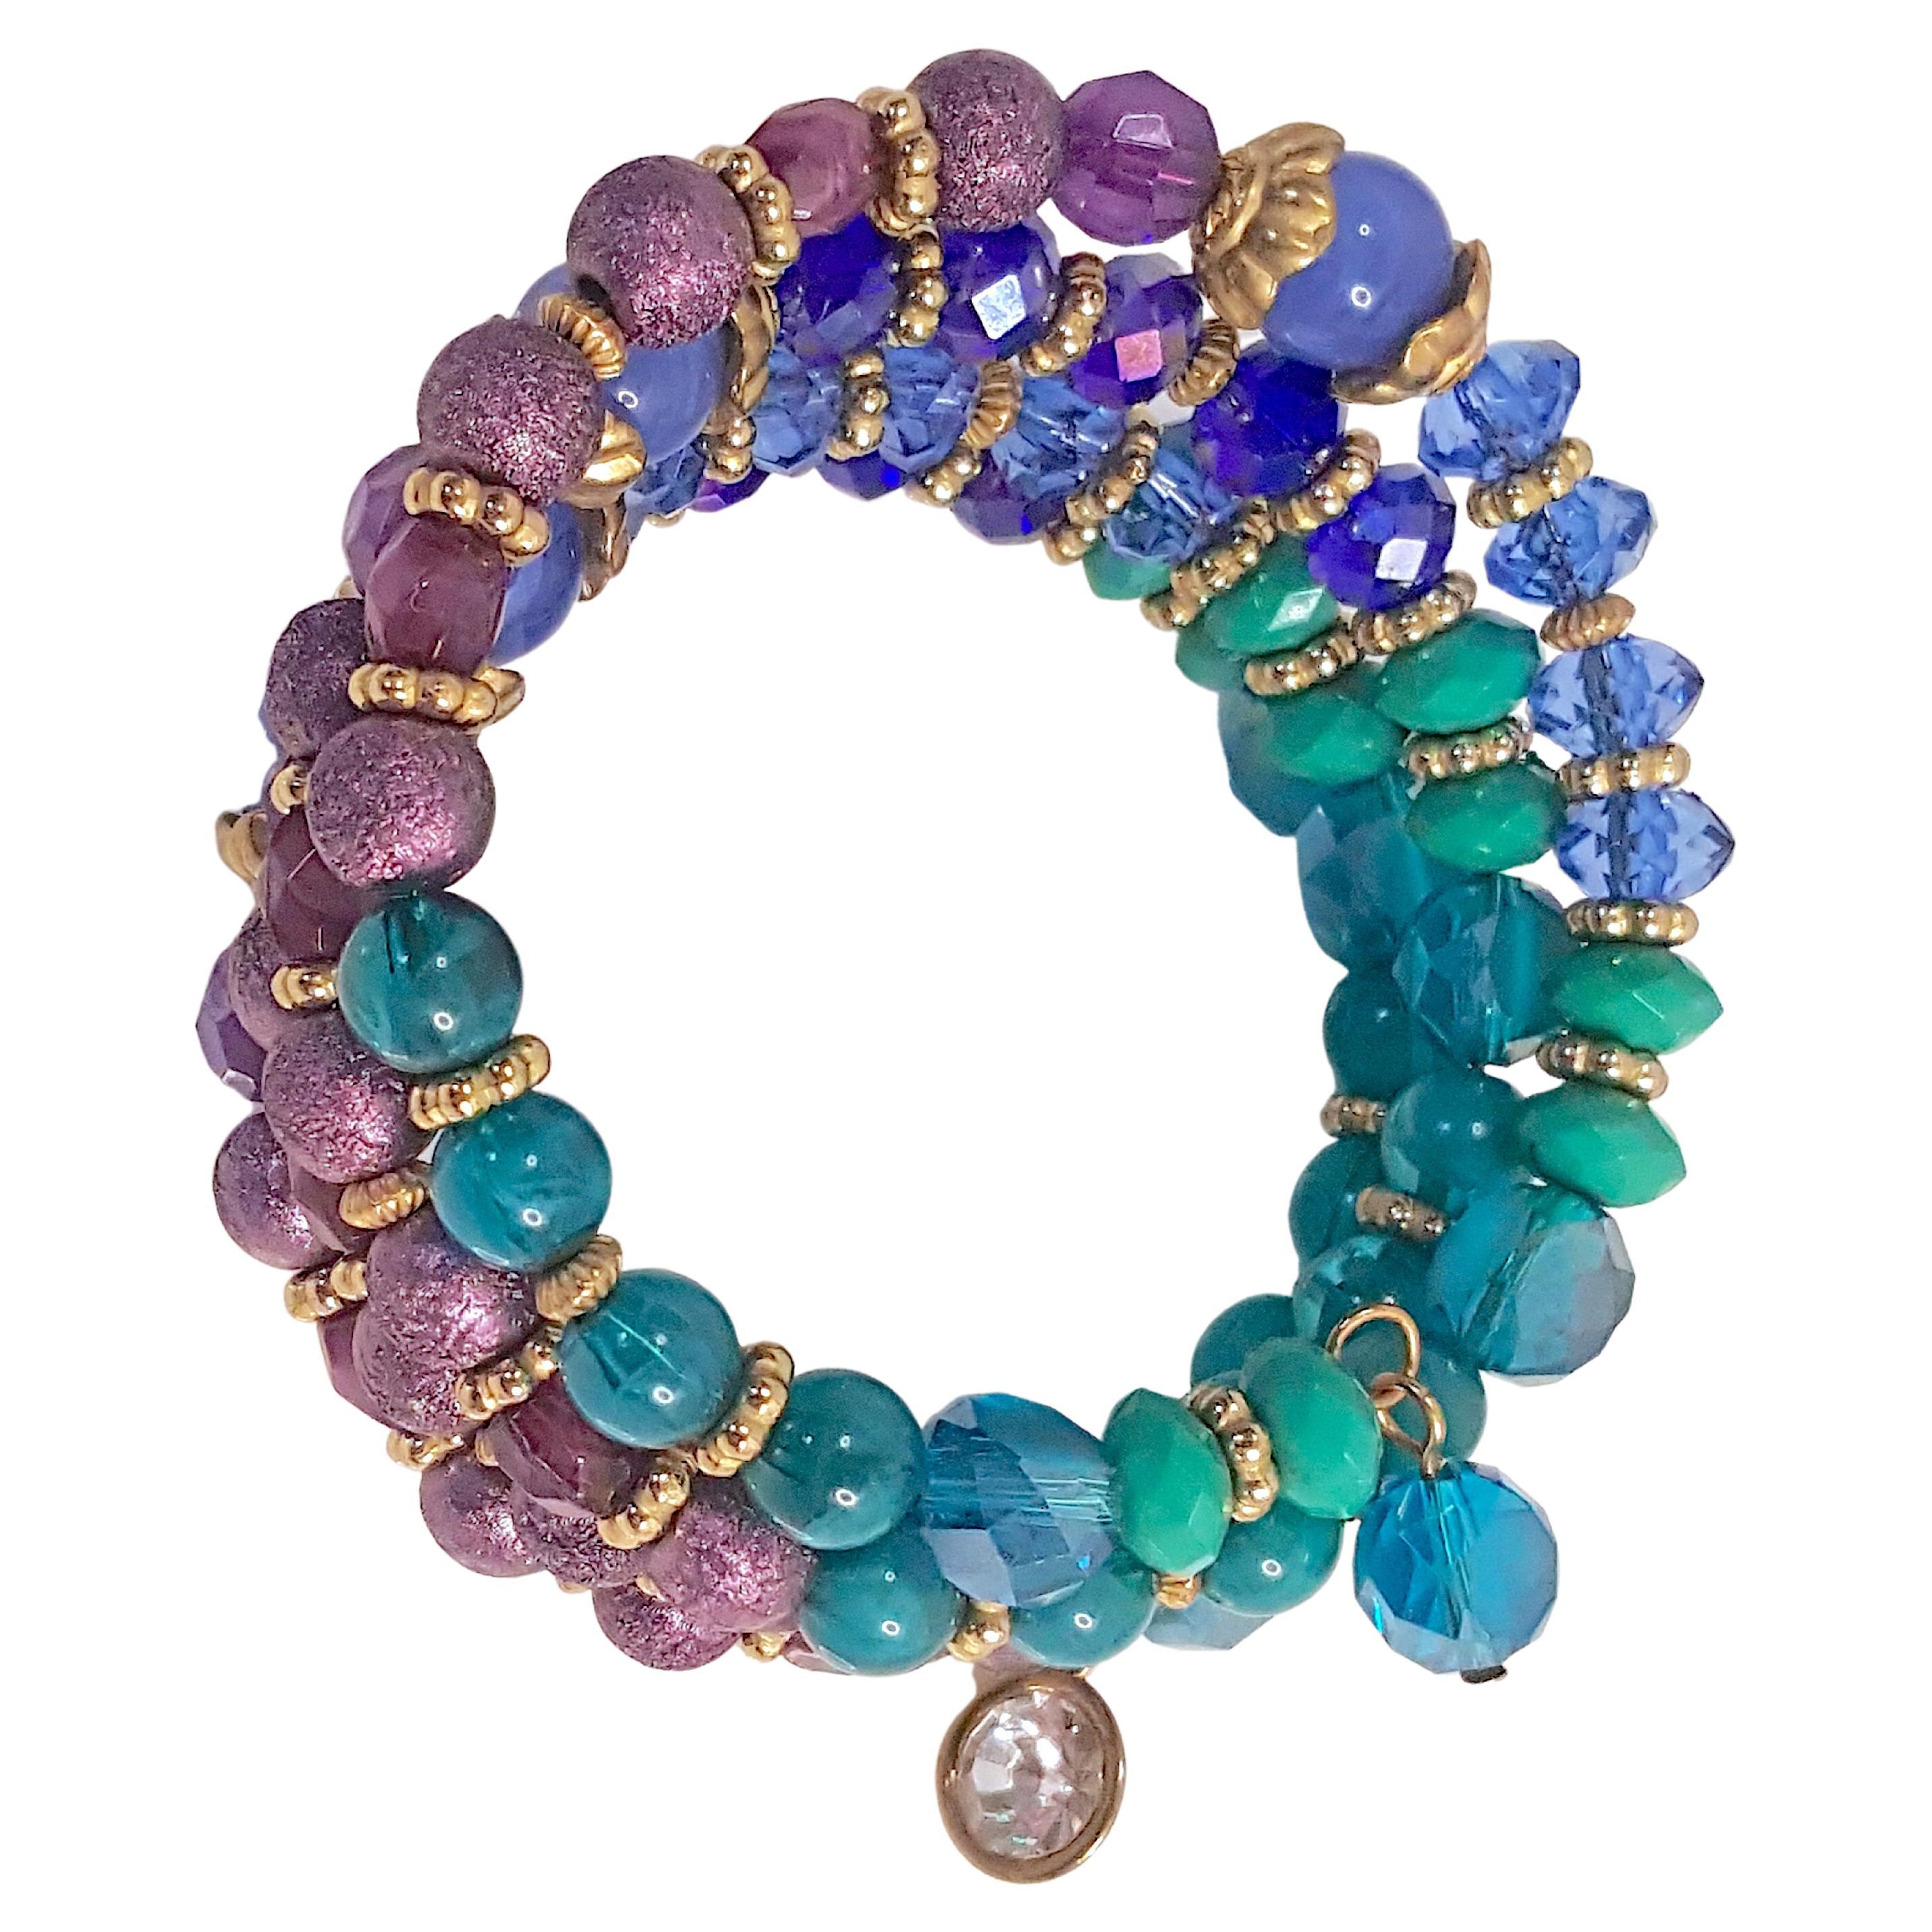 Ce bracelet de Miriam Haskell (1899-1981), composé de perles de couleur paon et de laiton doré, a été créé par son premier designer, Frank HESS. Depuis sa création à New York en 1926, aucun bijou Haskell n'a été marqué d'une signature permanente